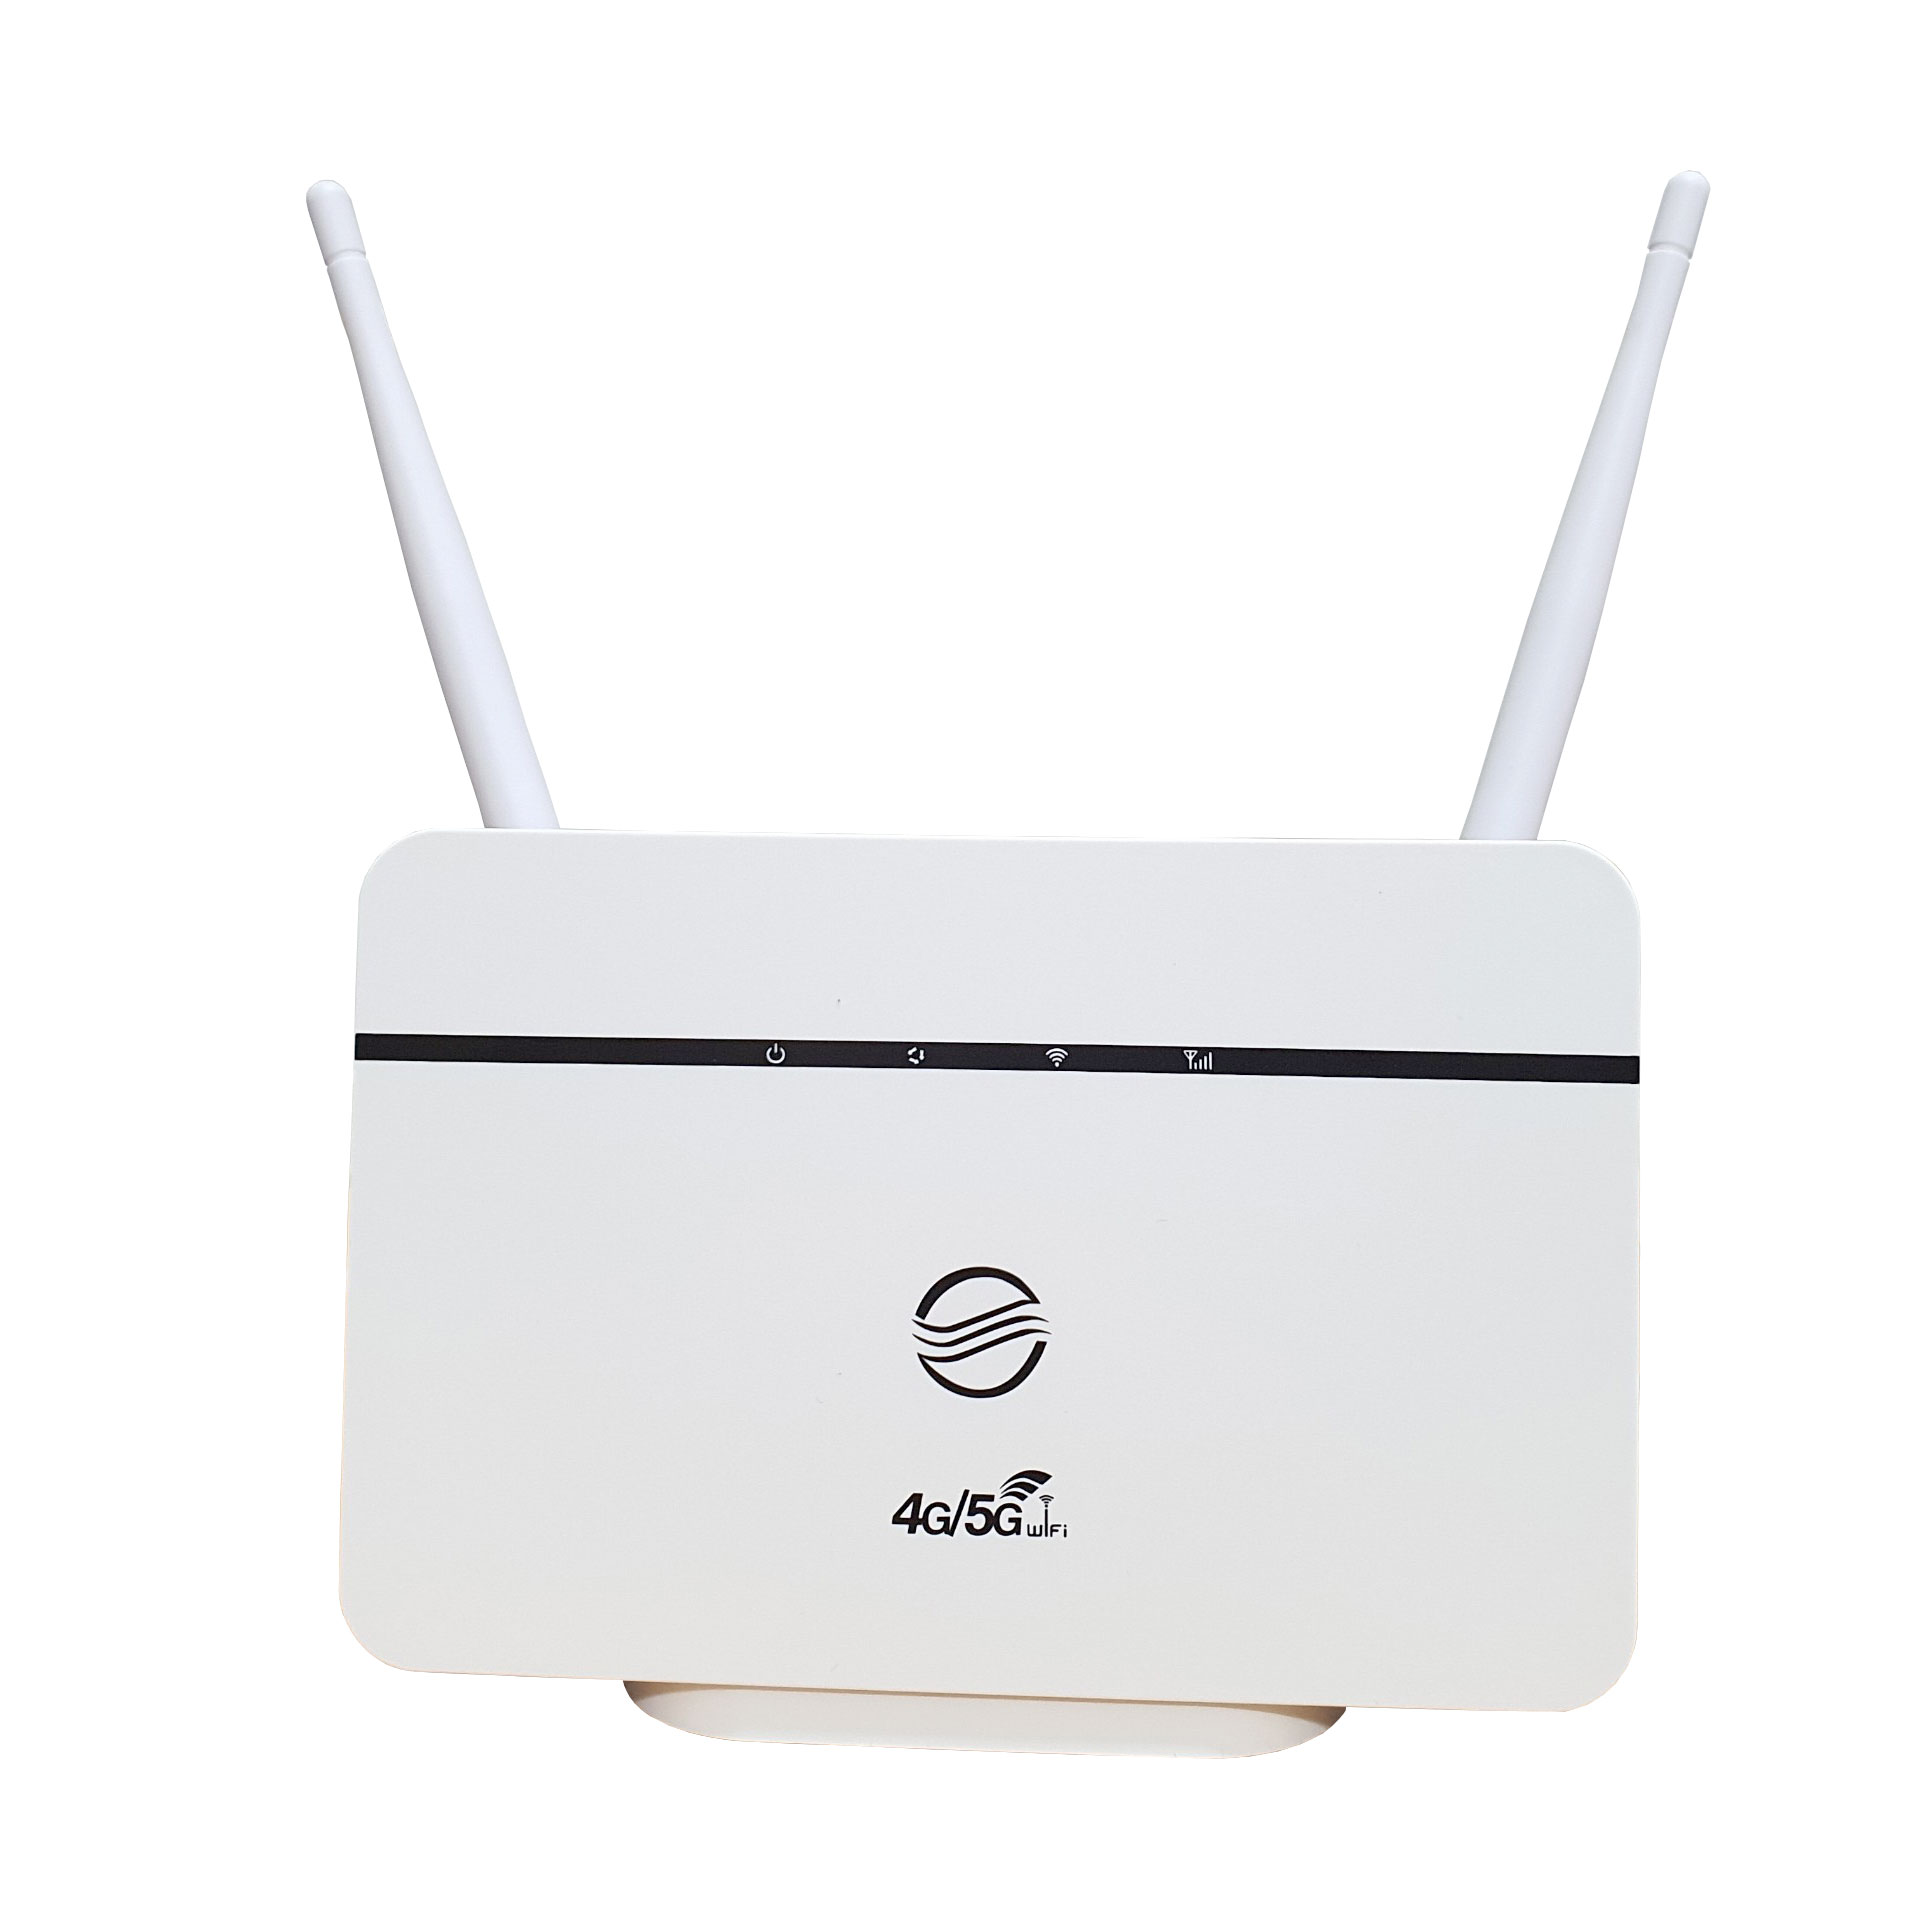 Bộ Phát Wifi 3G/4G CPE RS860, Tốc độ150Mbps – Kết nối 10 user - Hỗ trợ 1 cổng LAN/WAN 